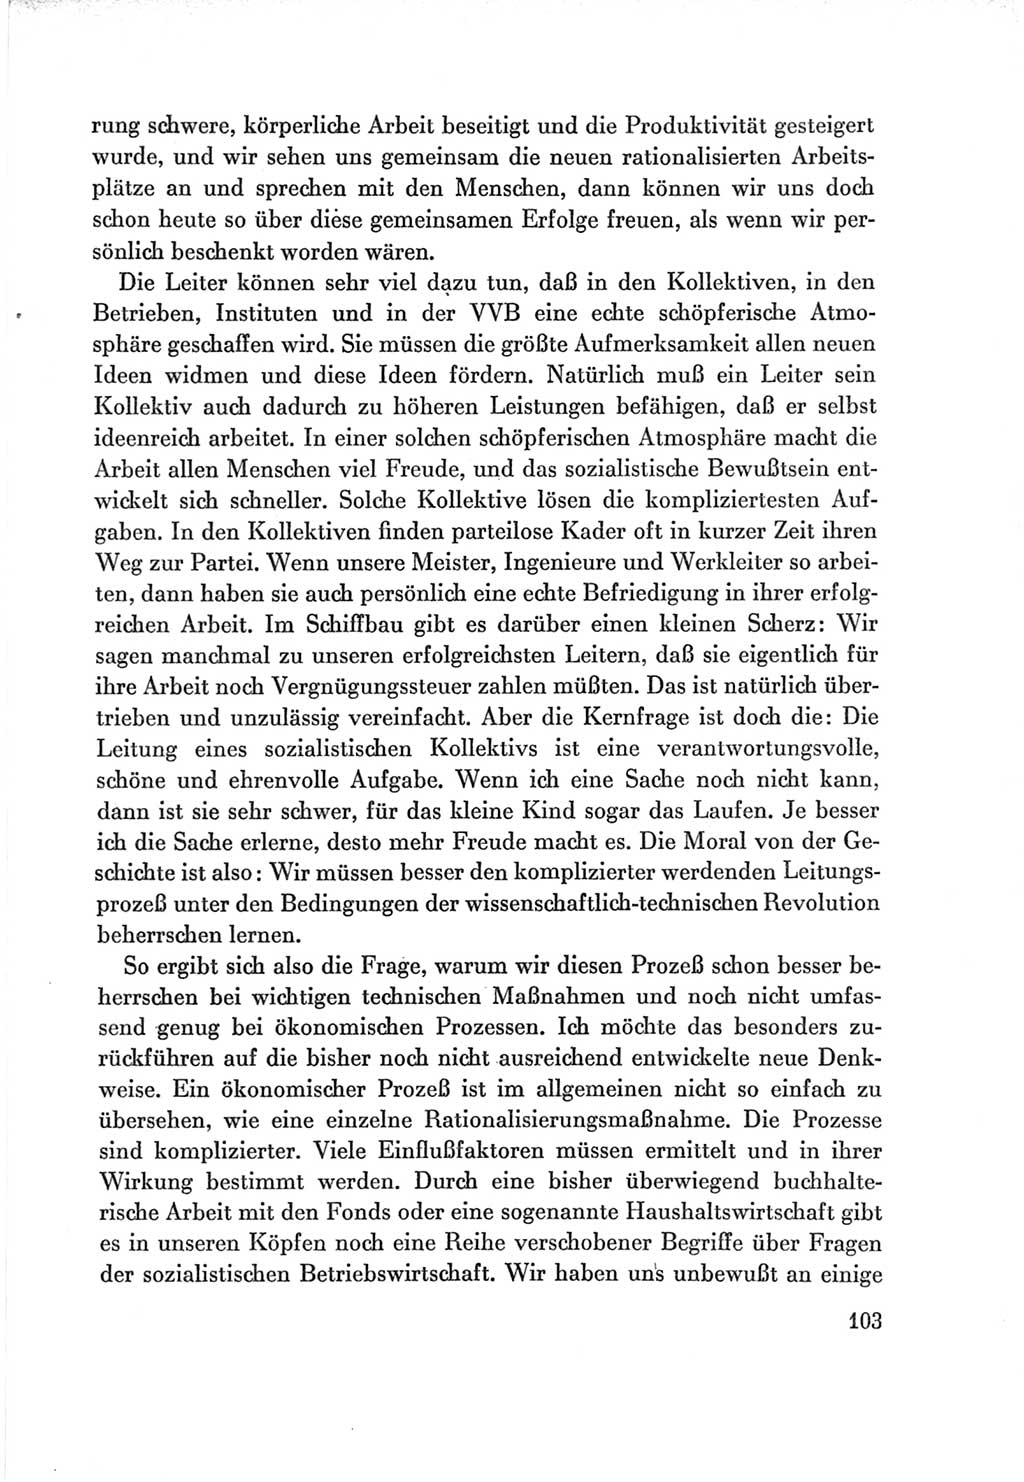 Protokoll der Verhandlungen des Ⅶ. Parteitages der Sozialistischen Einheitspartei Deutschlands (SED) [Deutsche Demokratische Republik (DDR)] 1967, Band Ⅲ, Seite 103 (Prot. Verh. Ⅶ. PT SED DDR 1967, Bd. Ⅲ, S. 103)